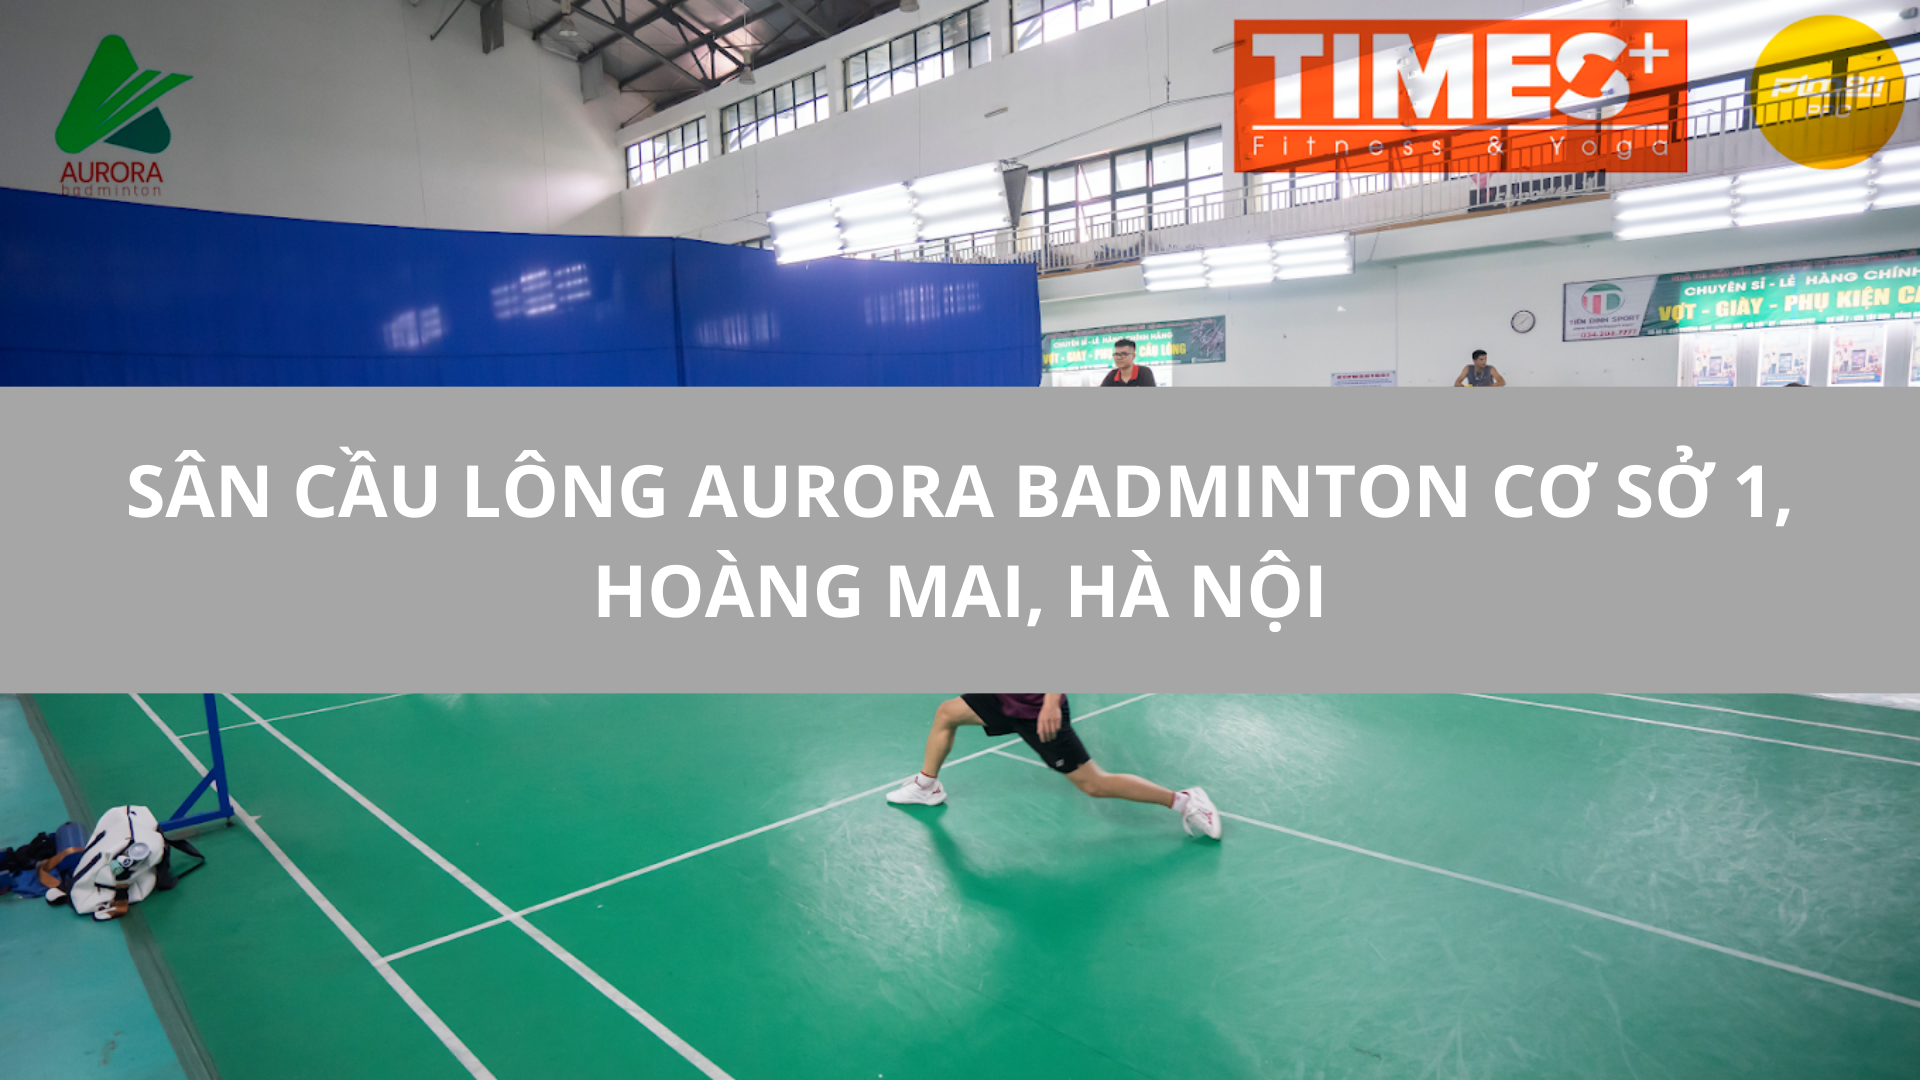 Sân Cầu Lông Aurora Badminton Cơ sở 1, Hoàng Mai, Hà Nội